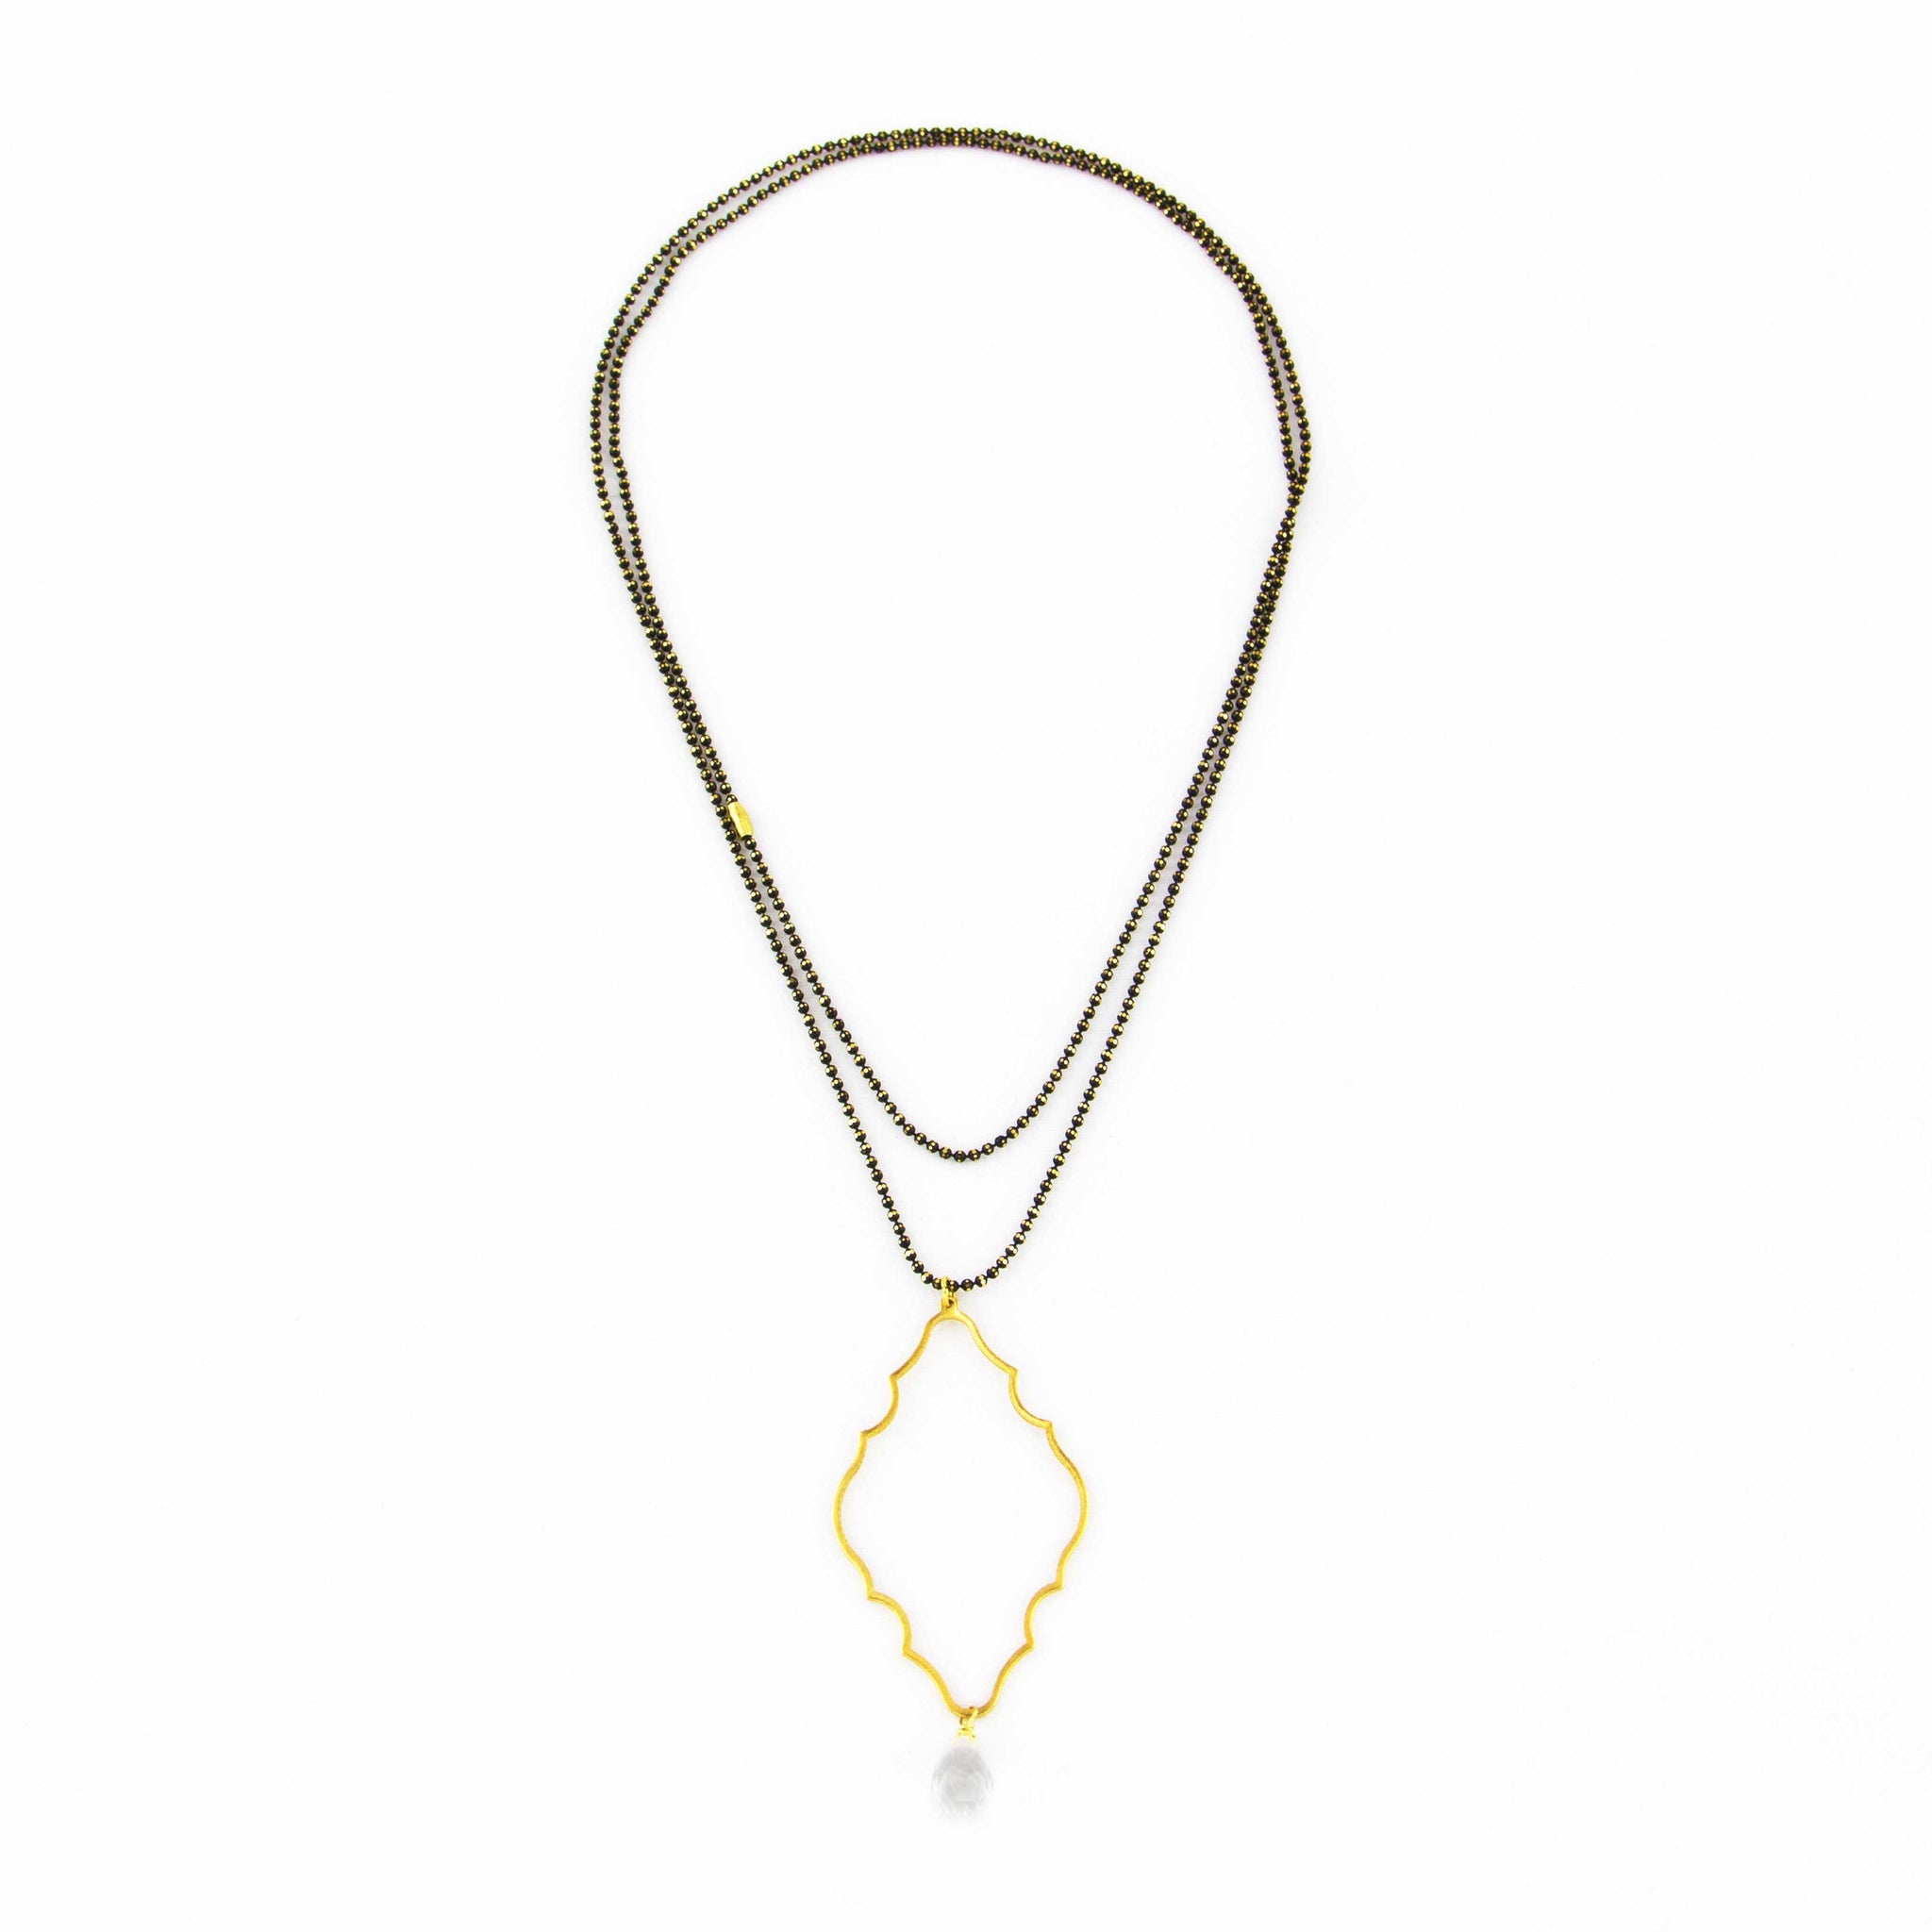 Trefoil Necklace: Gothic Dew Drop Long Necklace